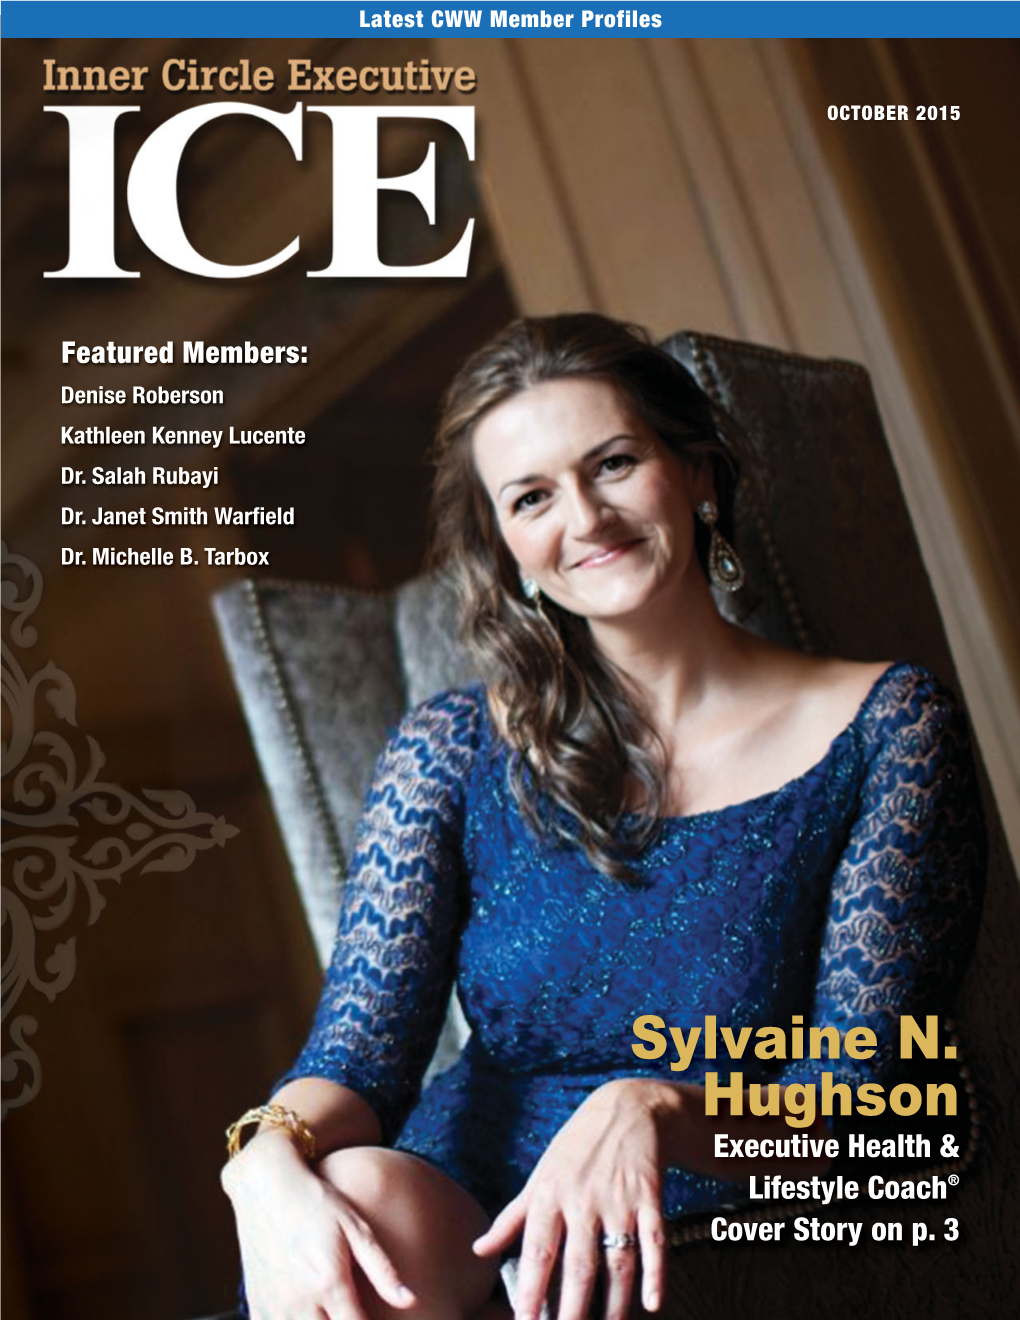 Sylvaine N. Hughson Executive Health & Lifestyle Coach® Cover Story on P